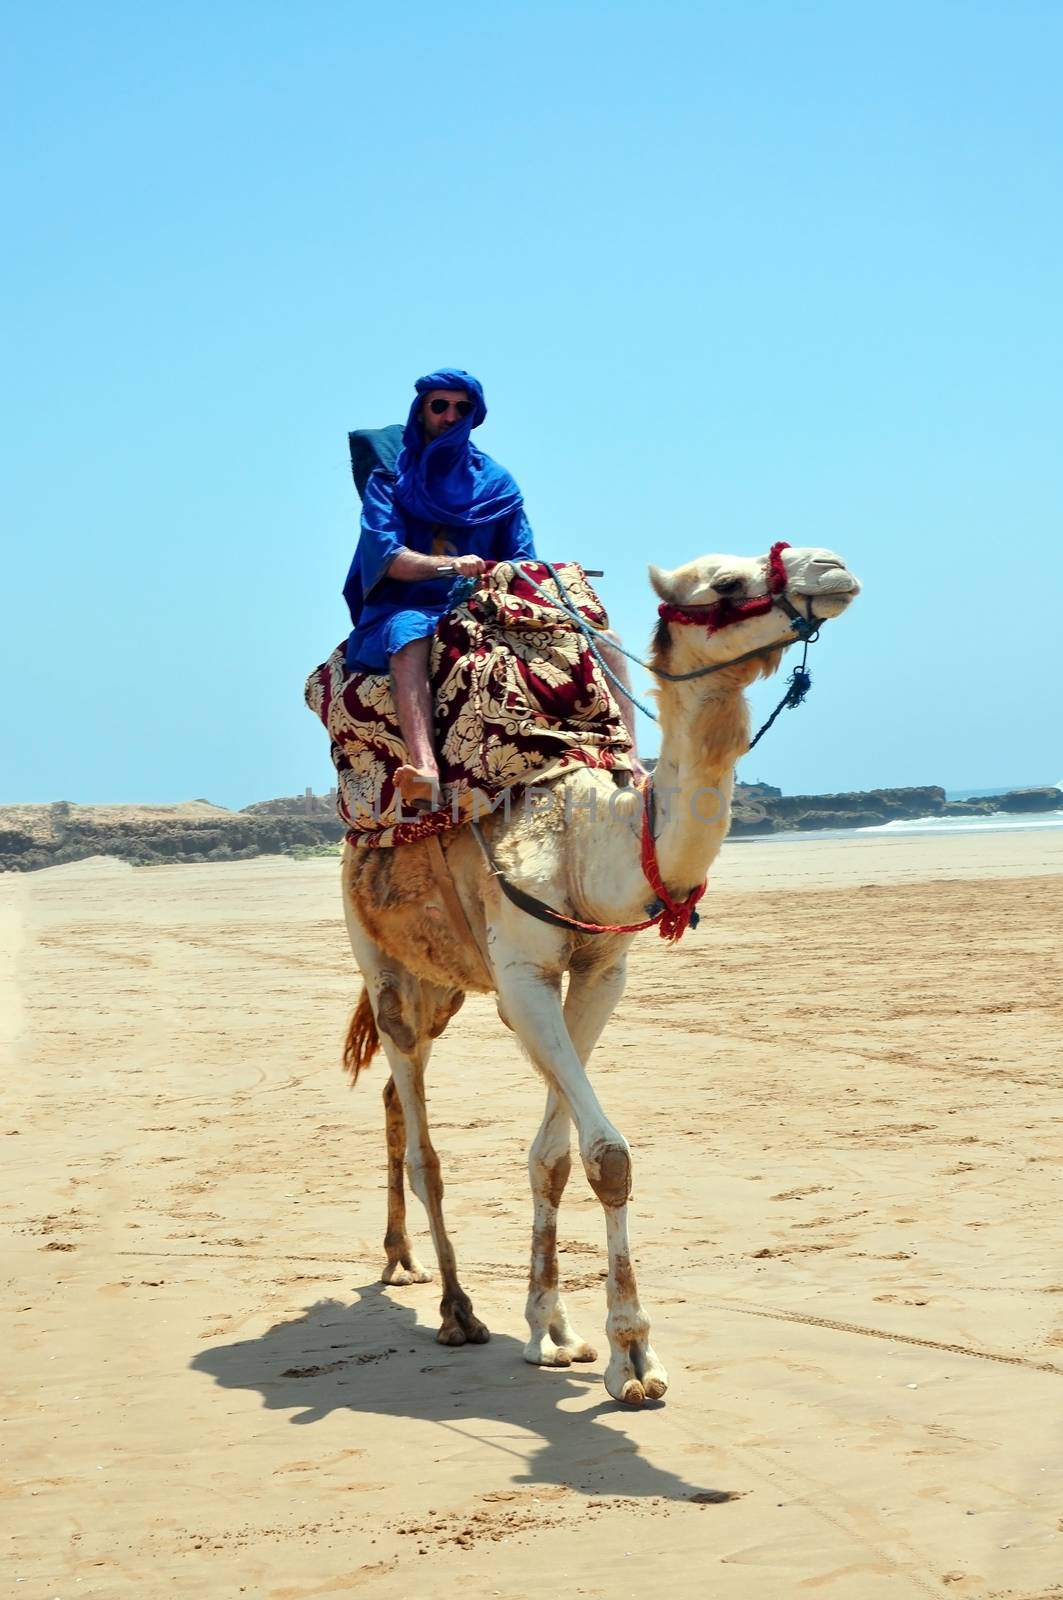 morocco berber riding camel on the atlantic ocean beach